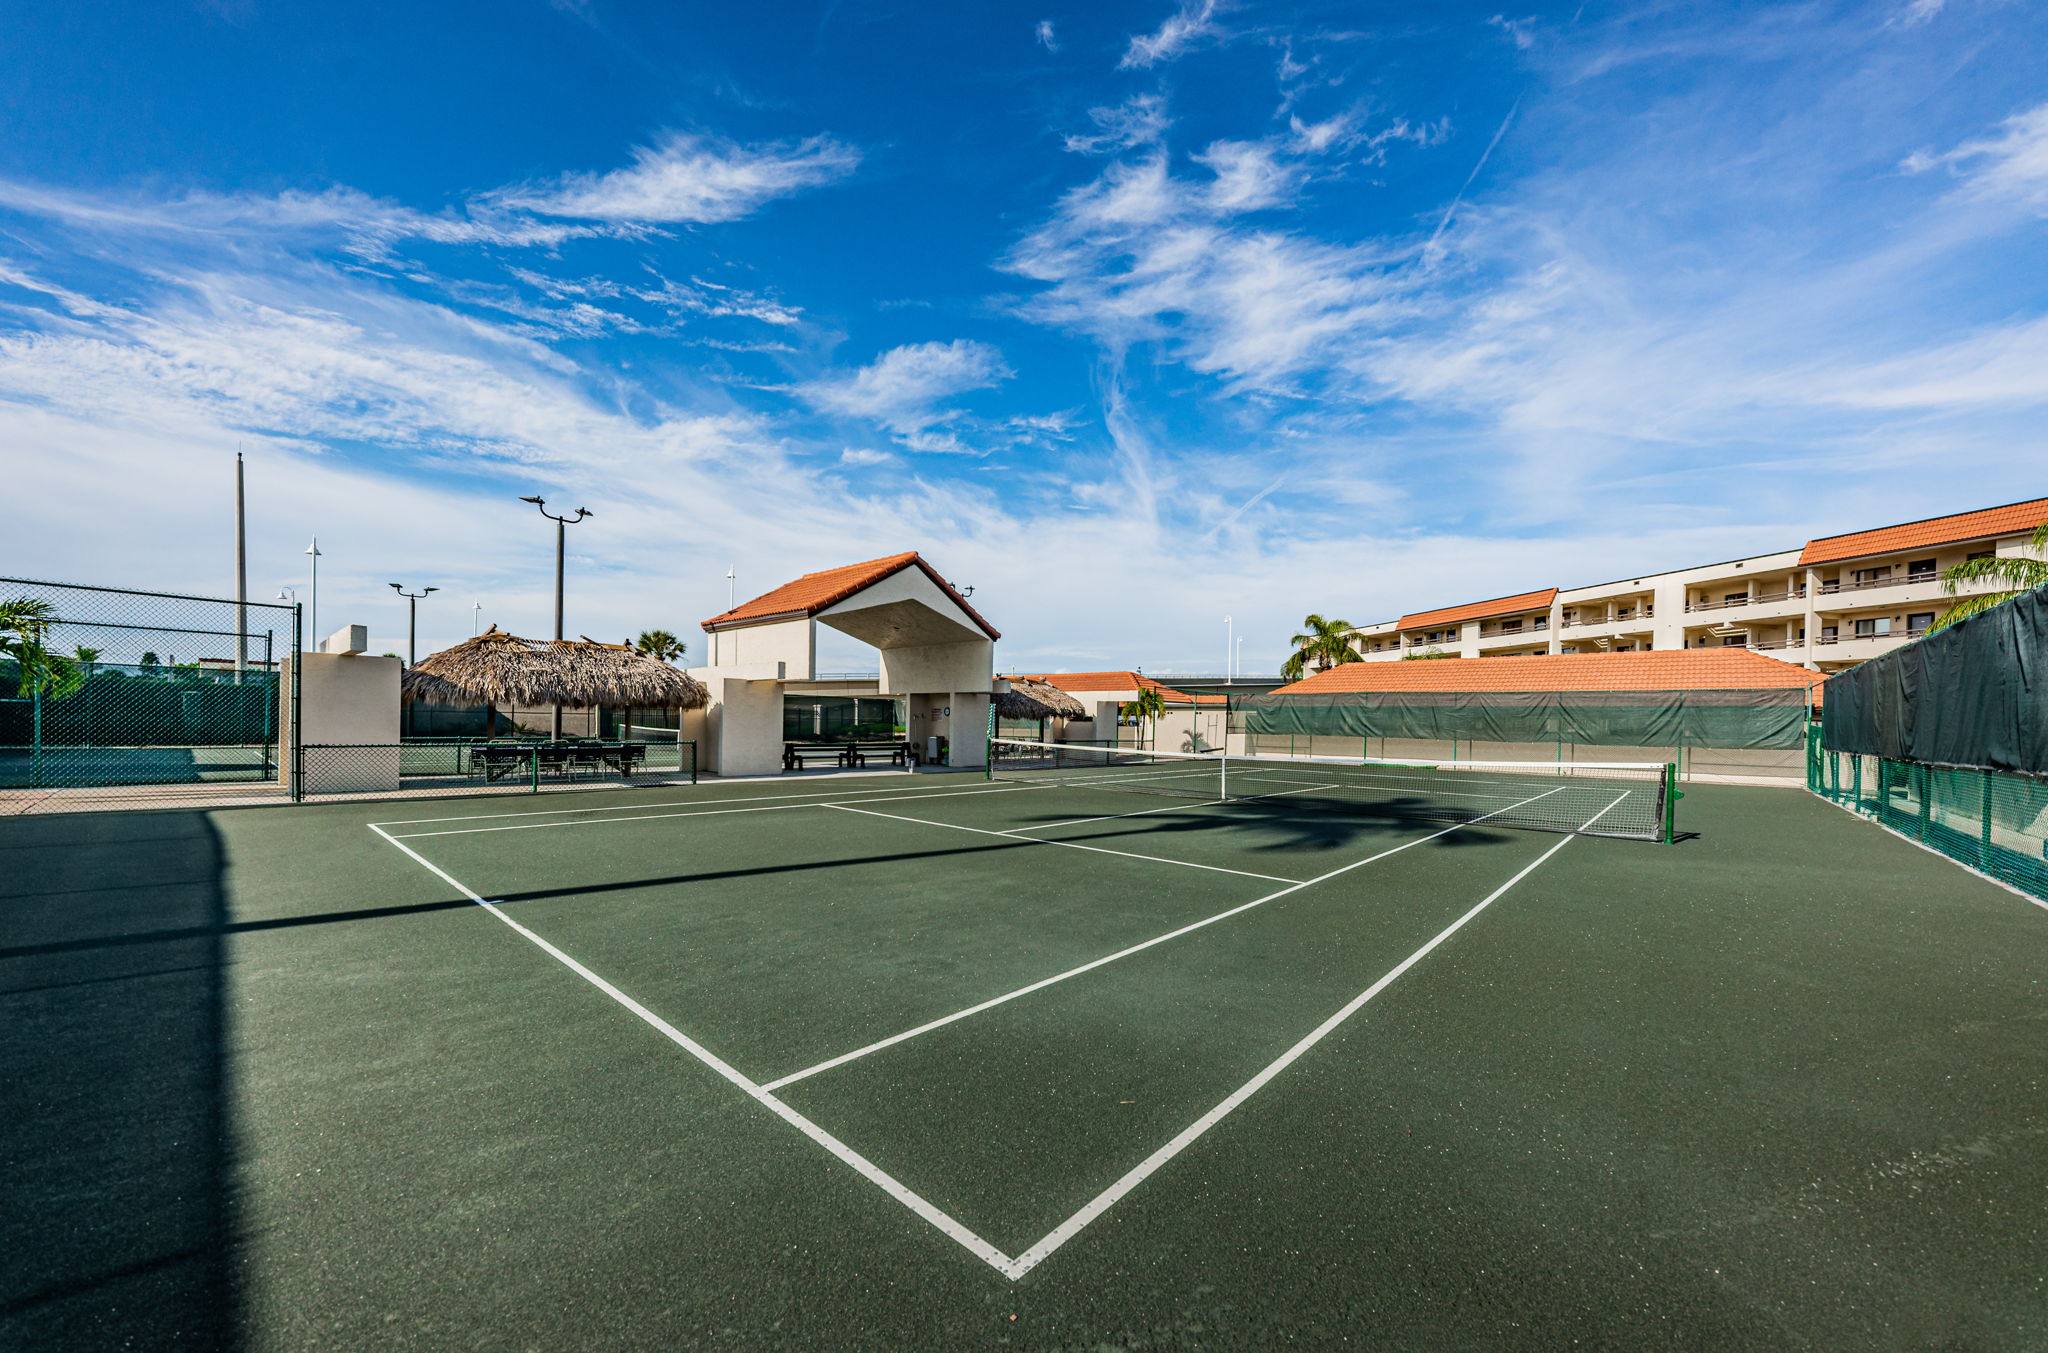 95-Tennis Court1